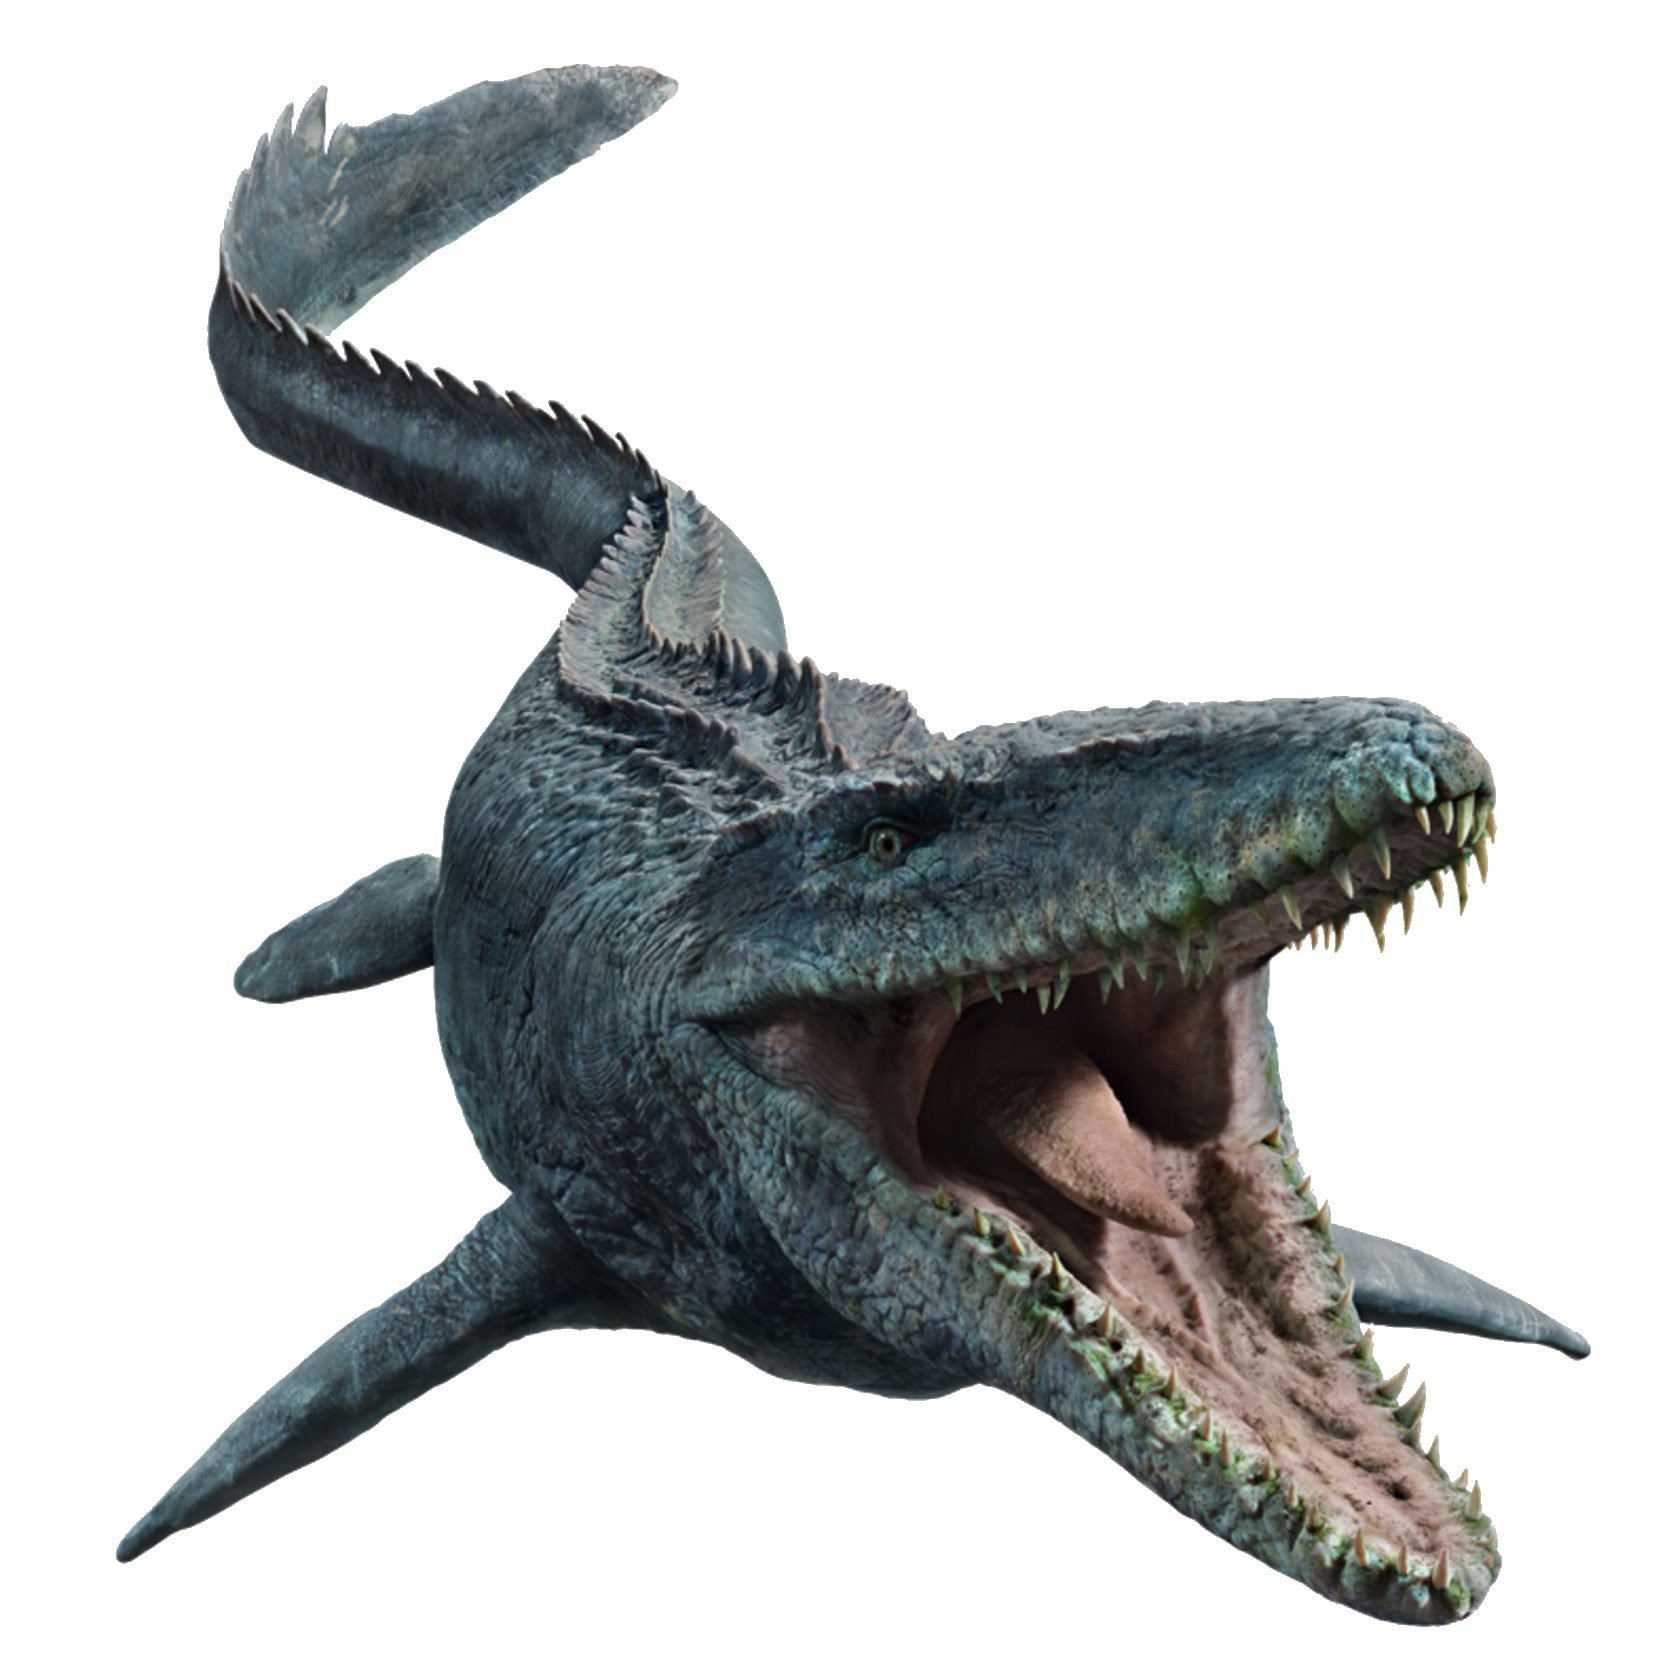 Jurassic World Fallen Kingdom Mosasaurus By Sonichedgehog2 On Deviantart 